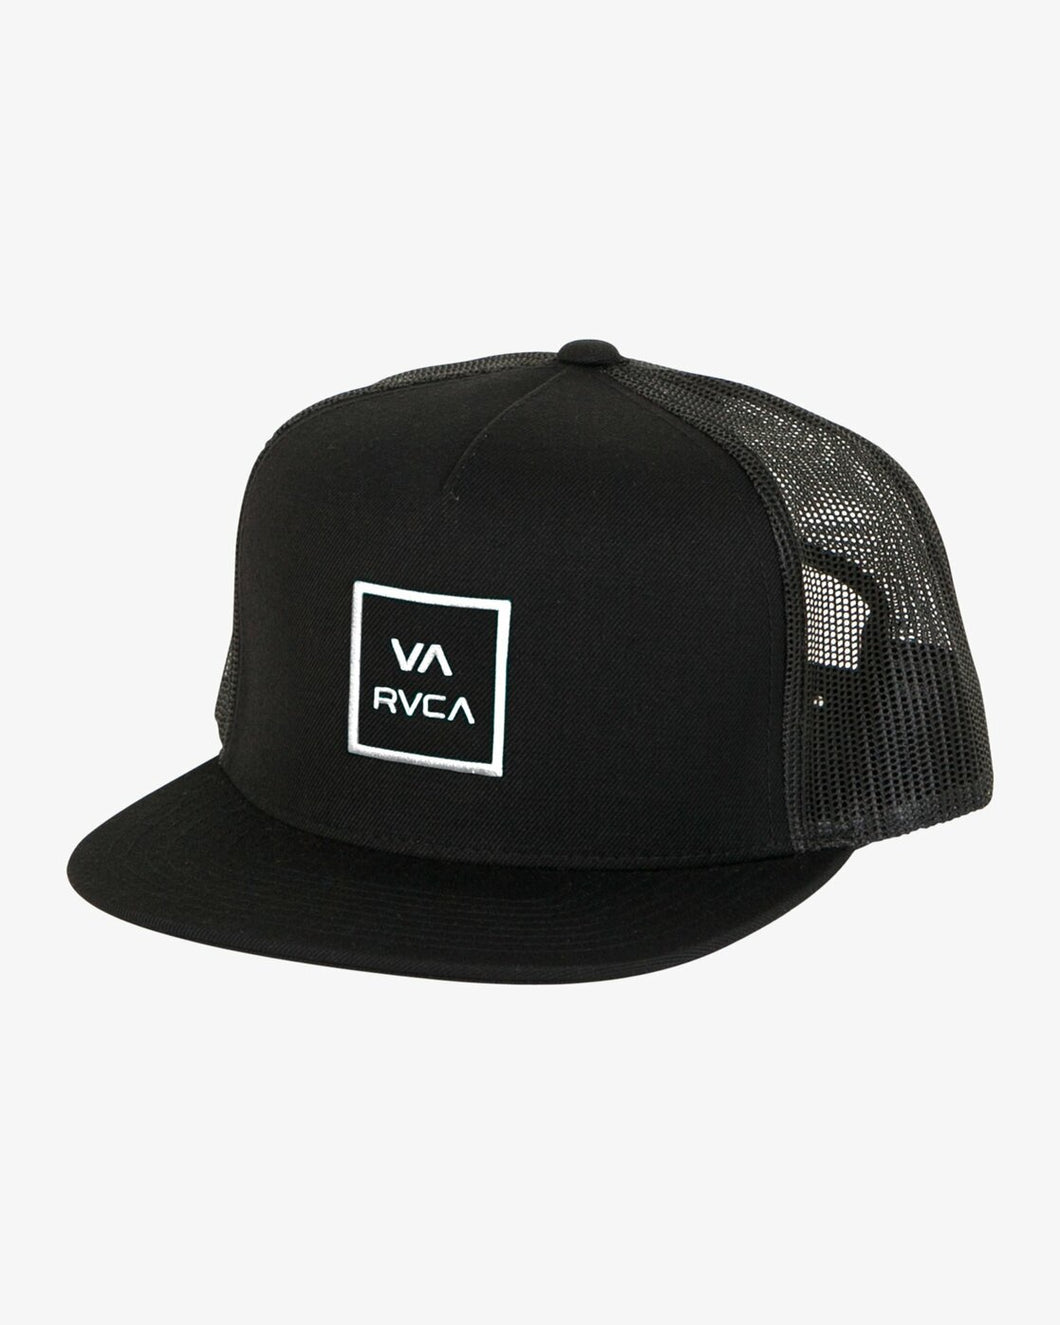 RVCA VA All The Way Trucker Hat - Black/White